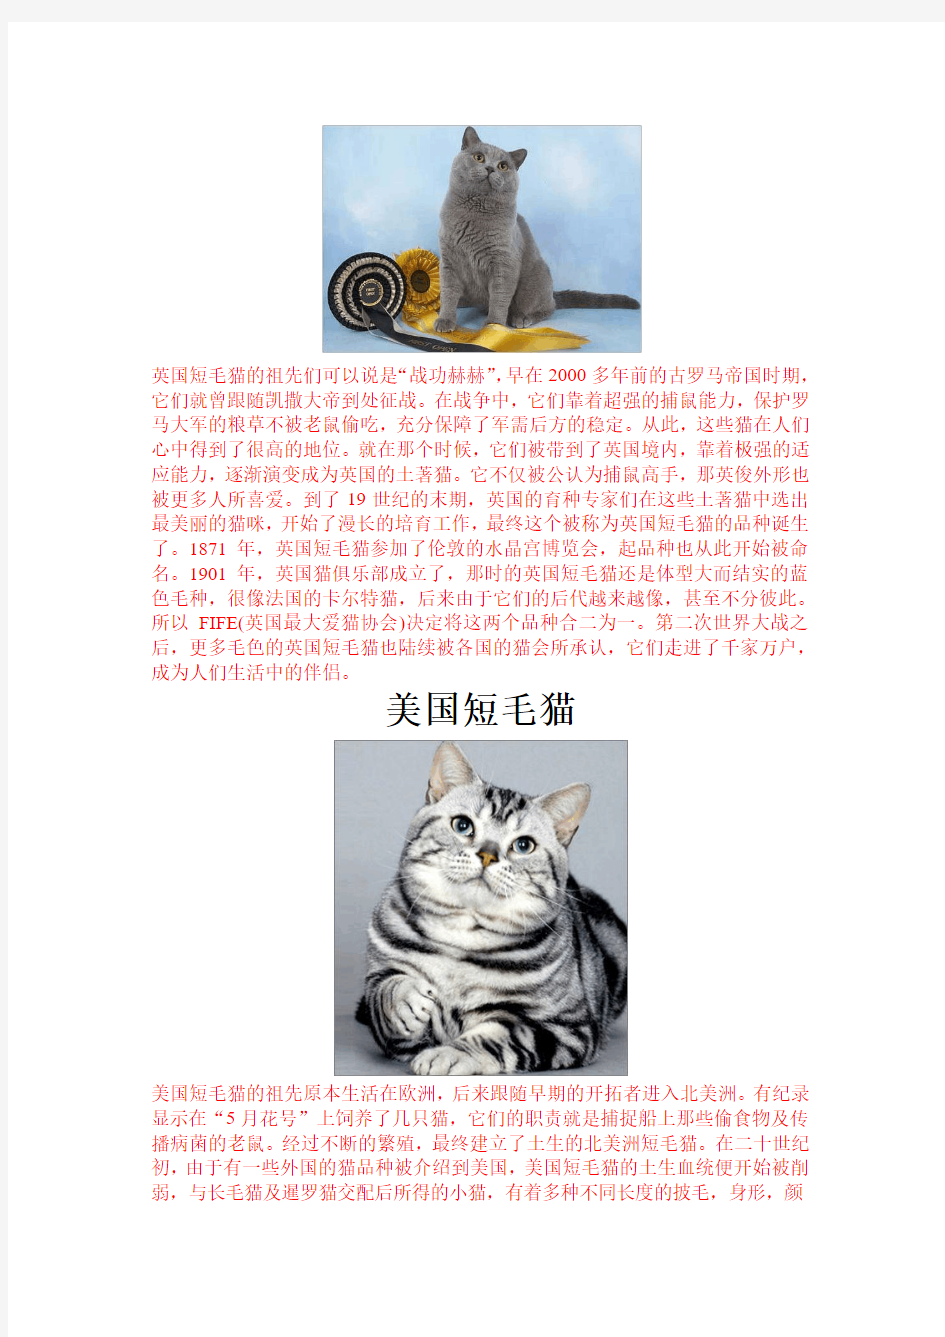 世界著名猫的品种及图片